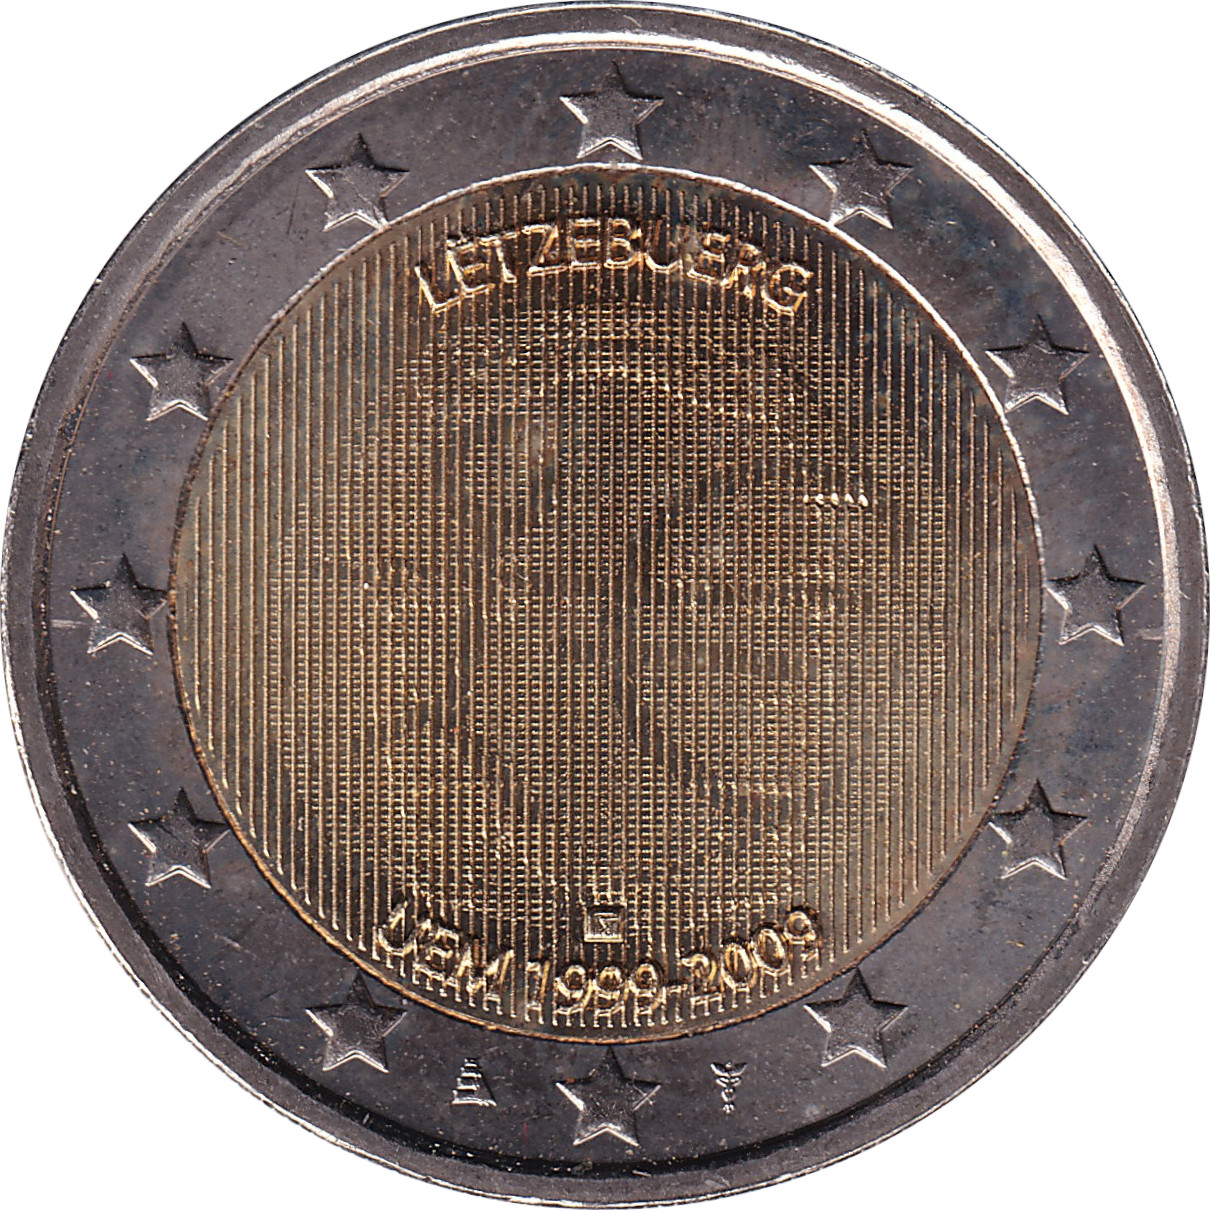 2 euro - Union Économique Monétaire - Luxembourg